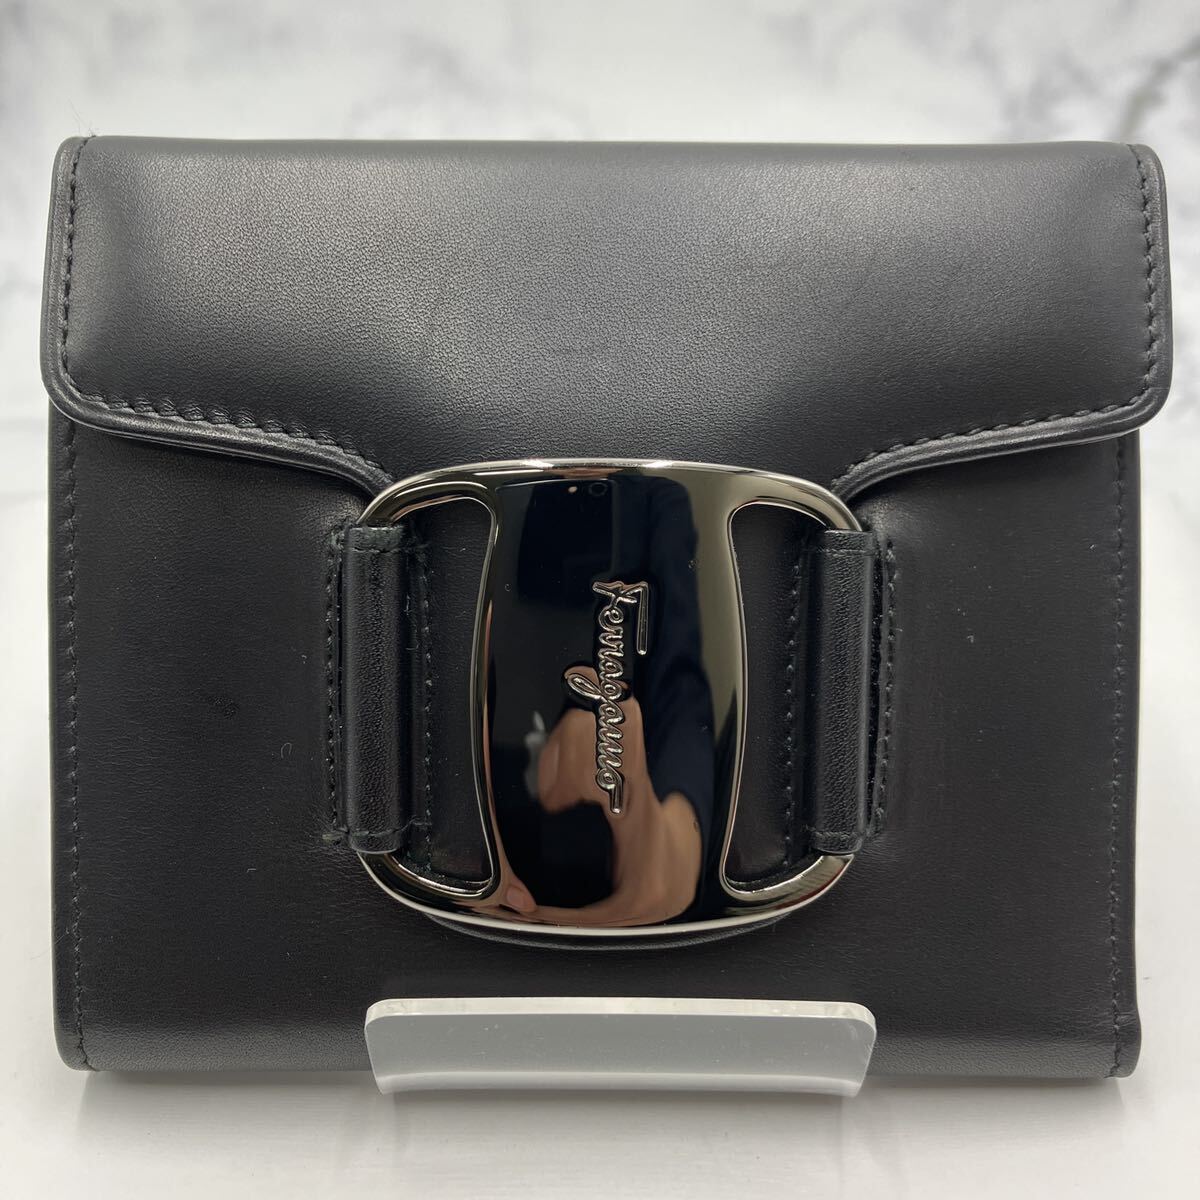 *[ распродажа ] прекрасный товар Salvatore Ferragamo Salvatore Ferragamo три складывать кошелек кожа черный бренд кошелек коробка приложен 